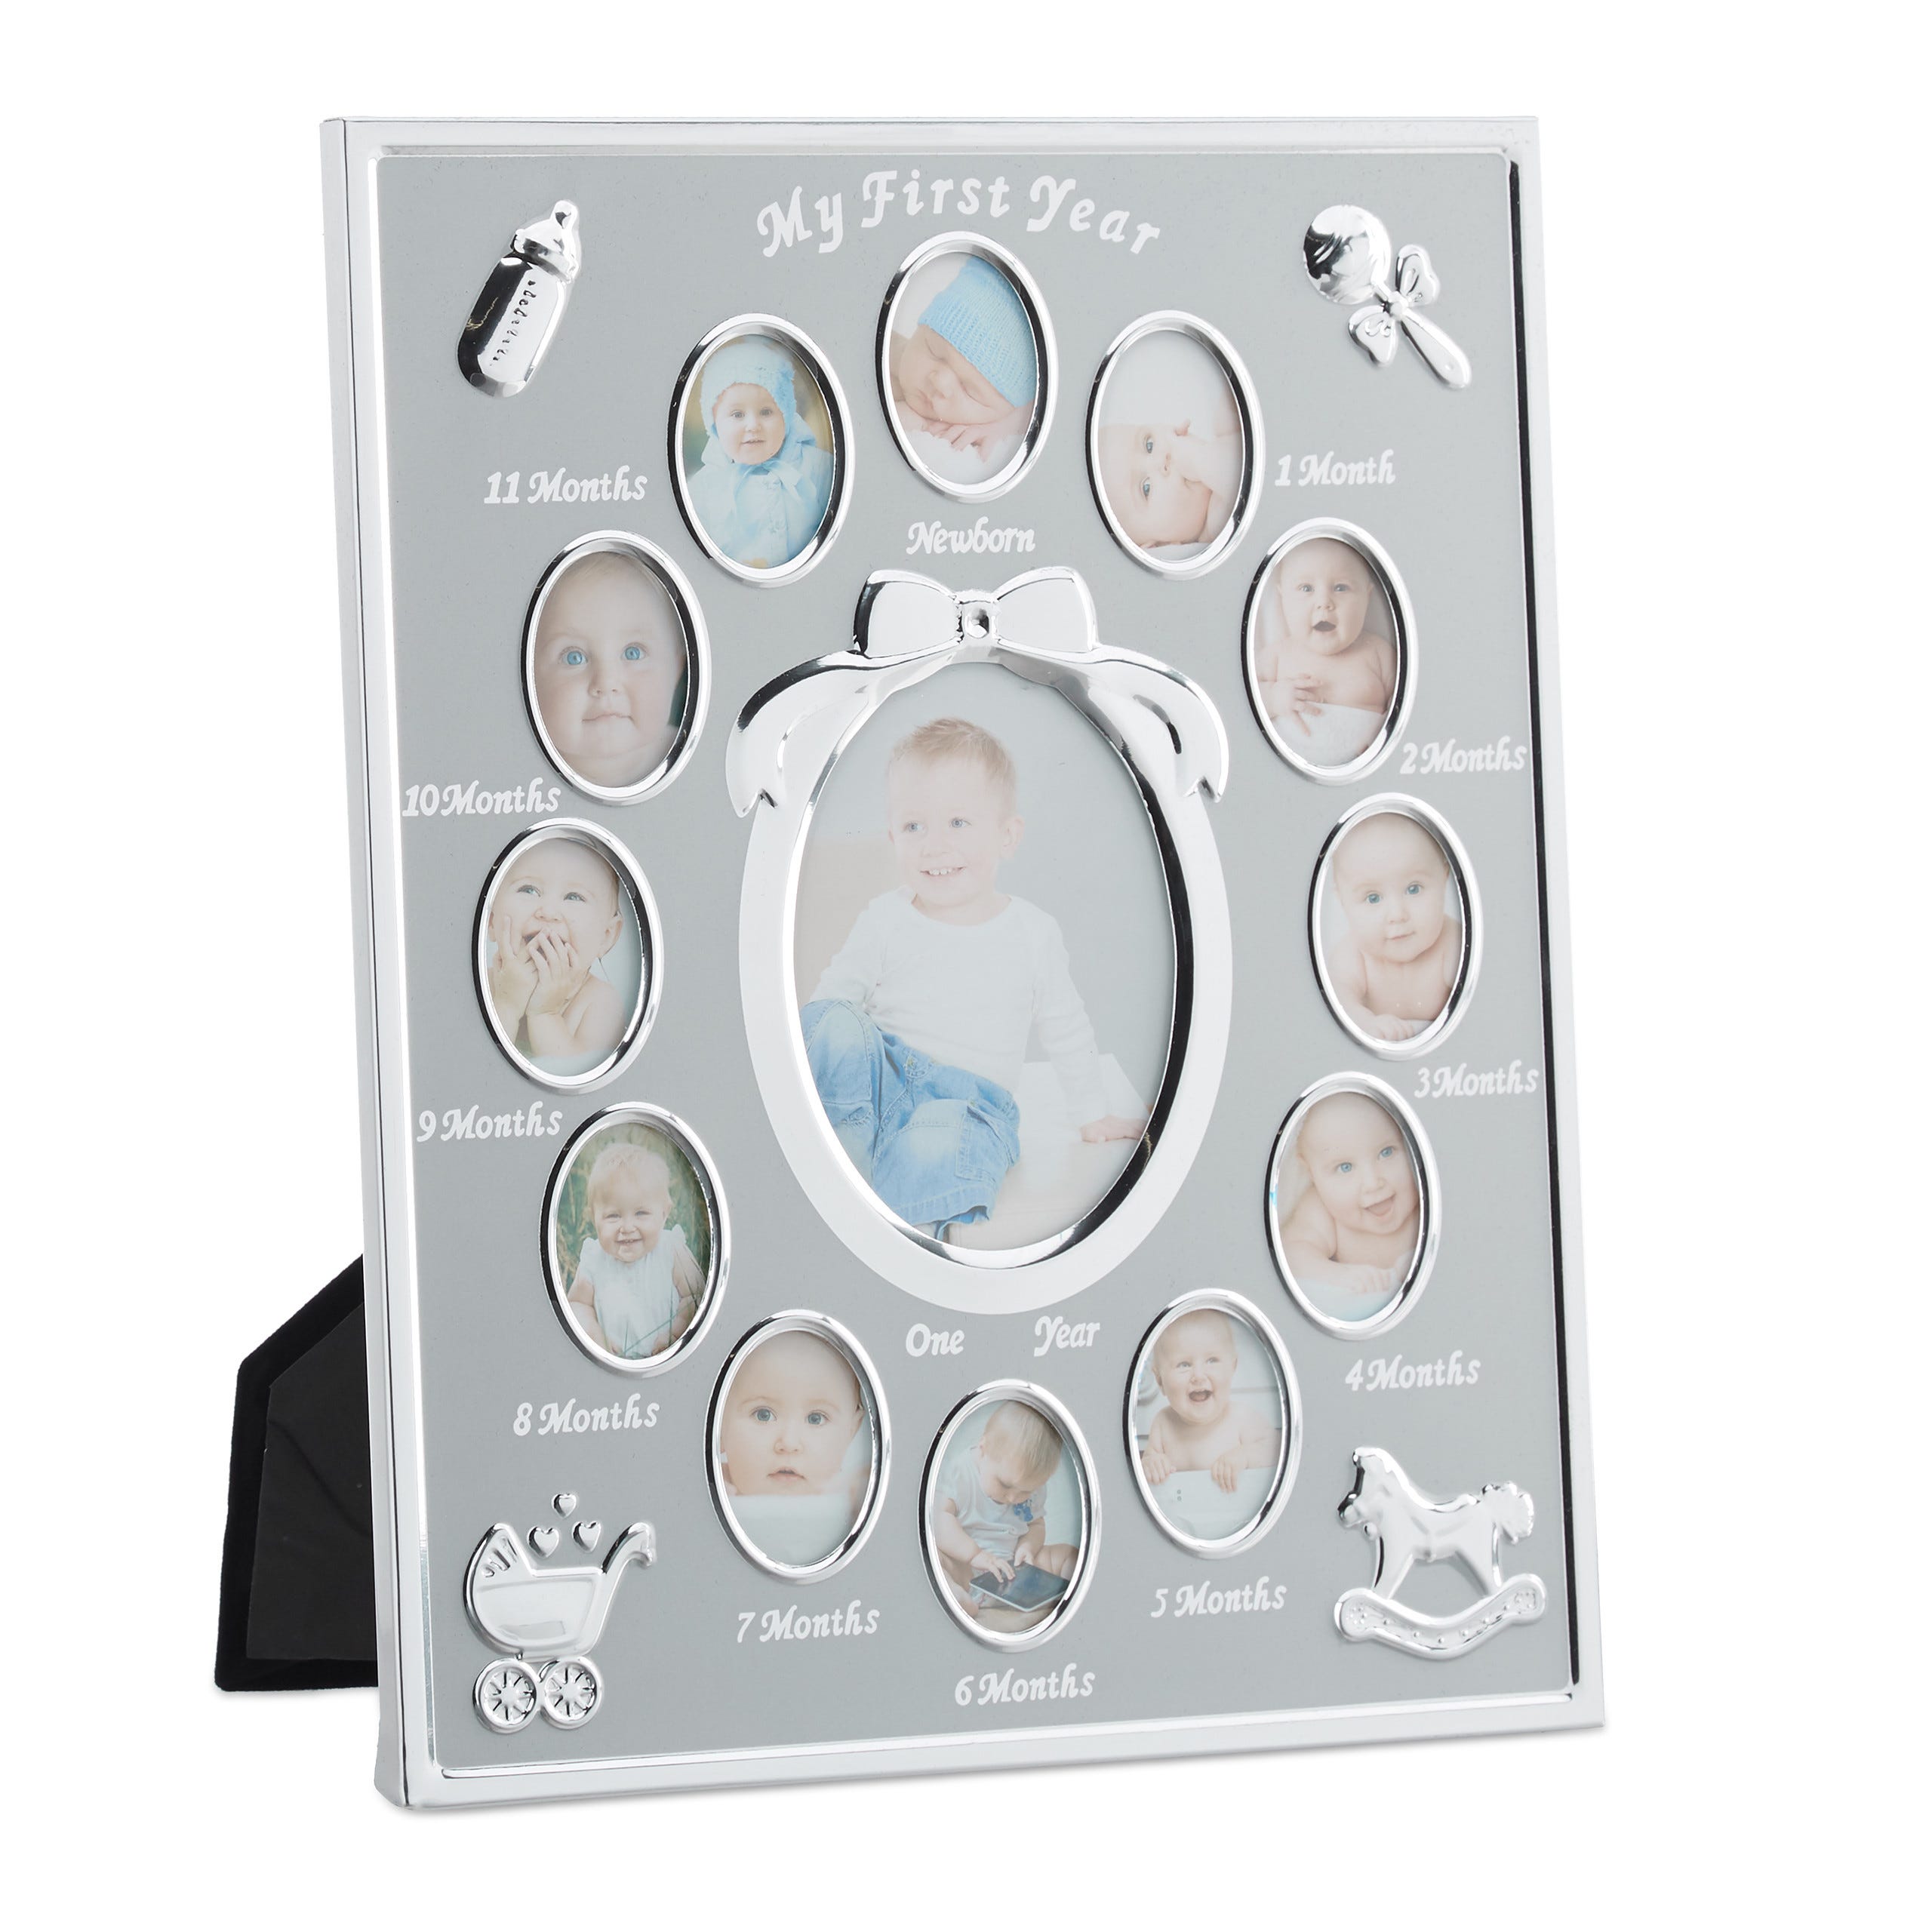 Cornice portafoto per i primi 12 mesi del bambino, con scritta “My